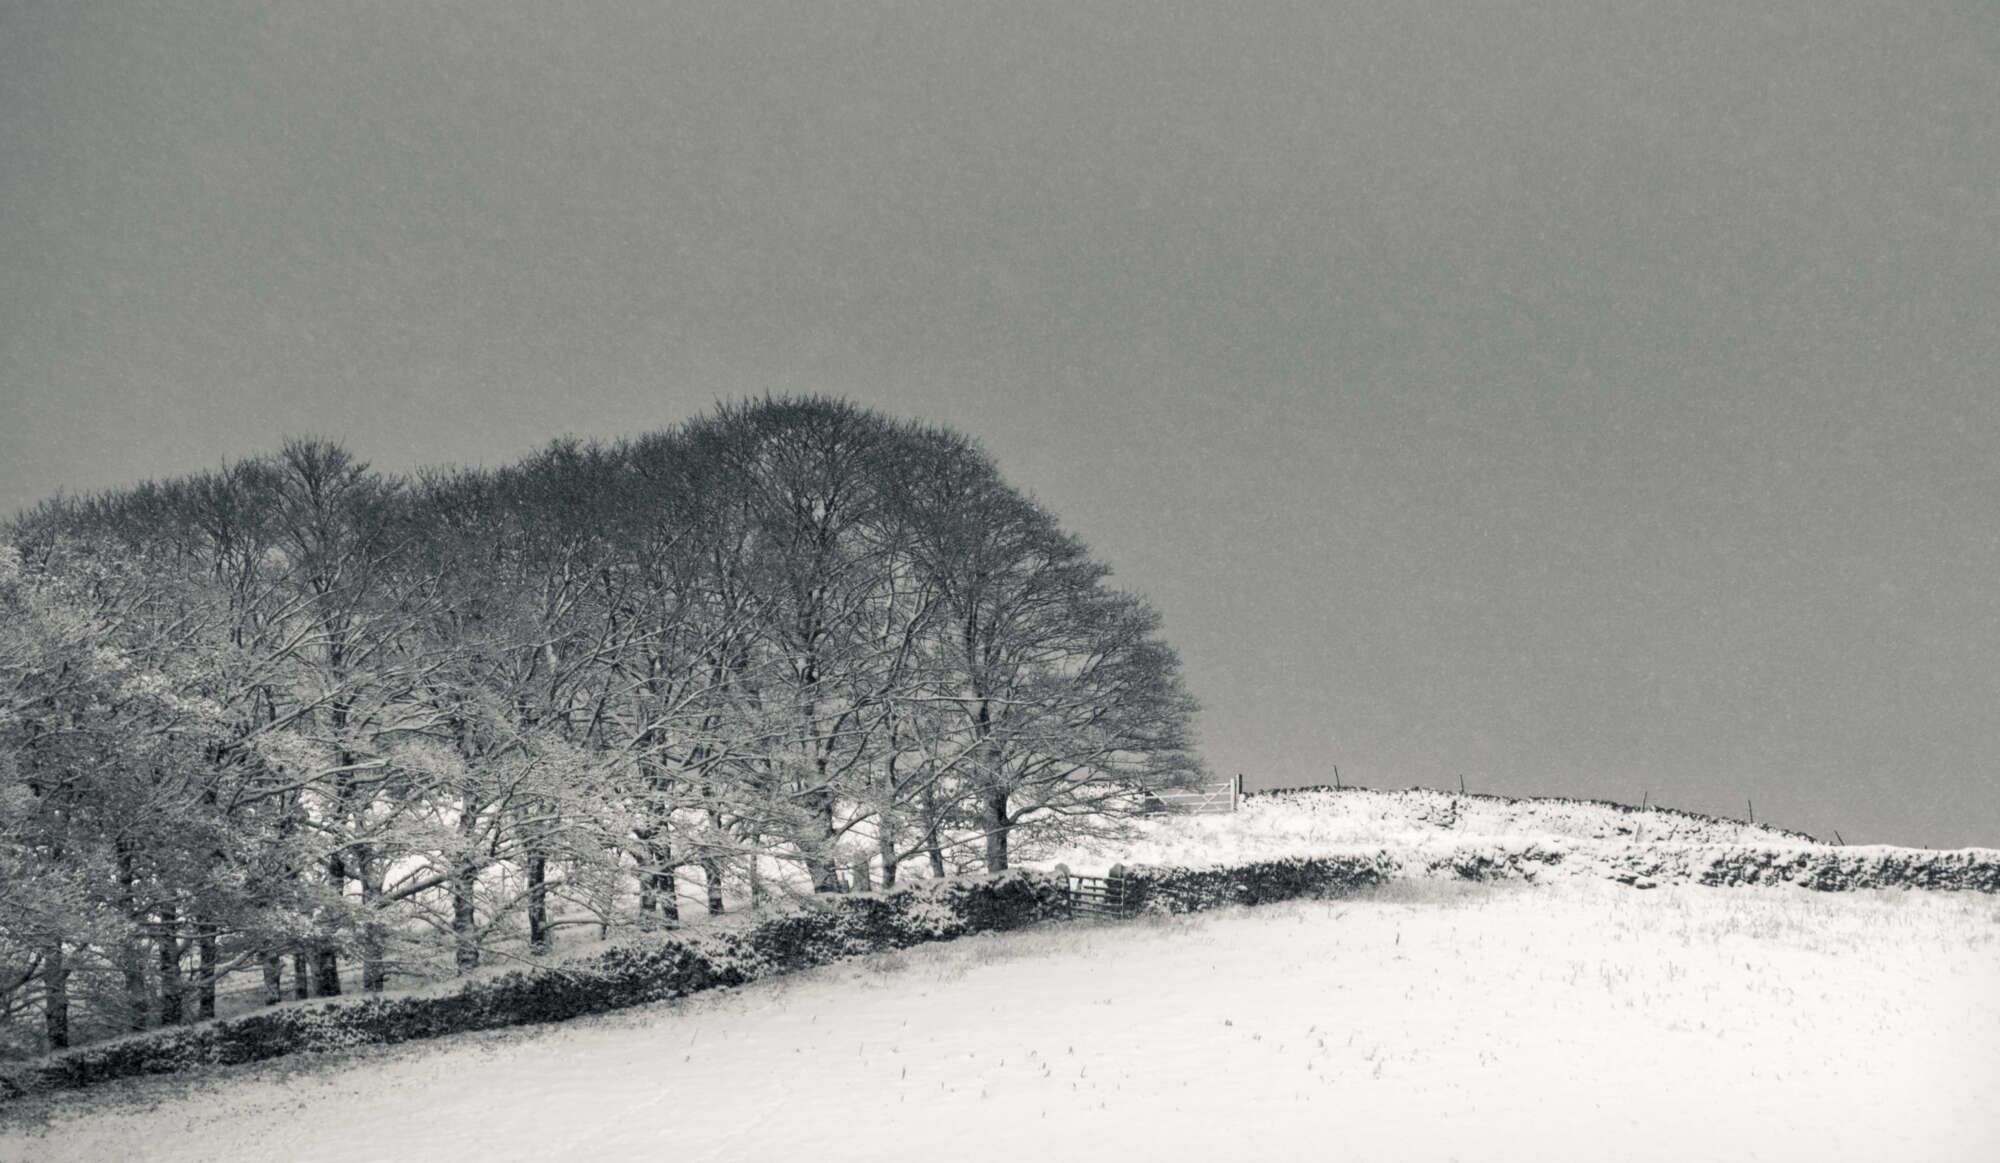 Treeline in Snow Yorkshire Dales  aspect2i